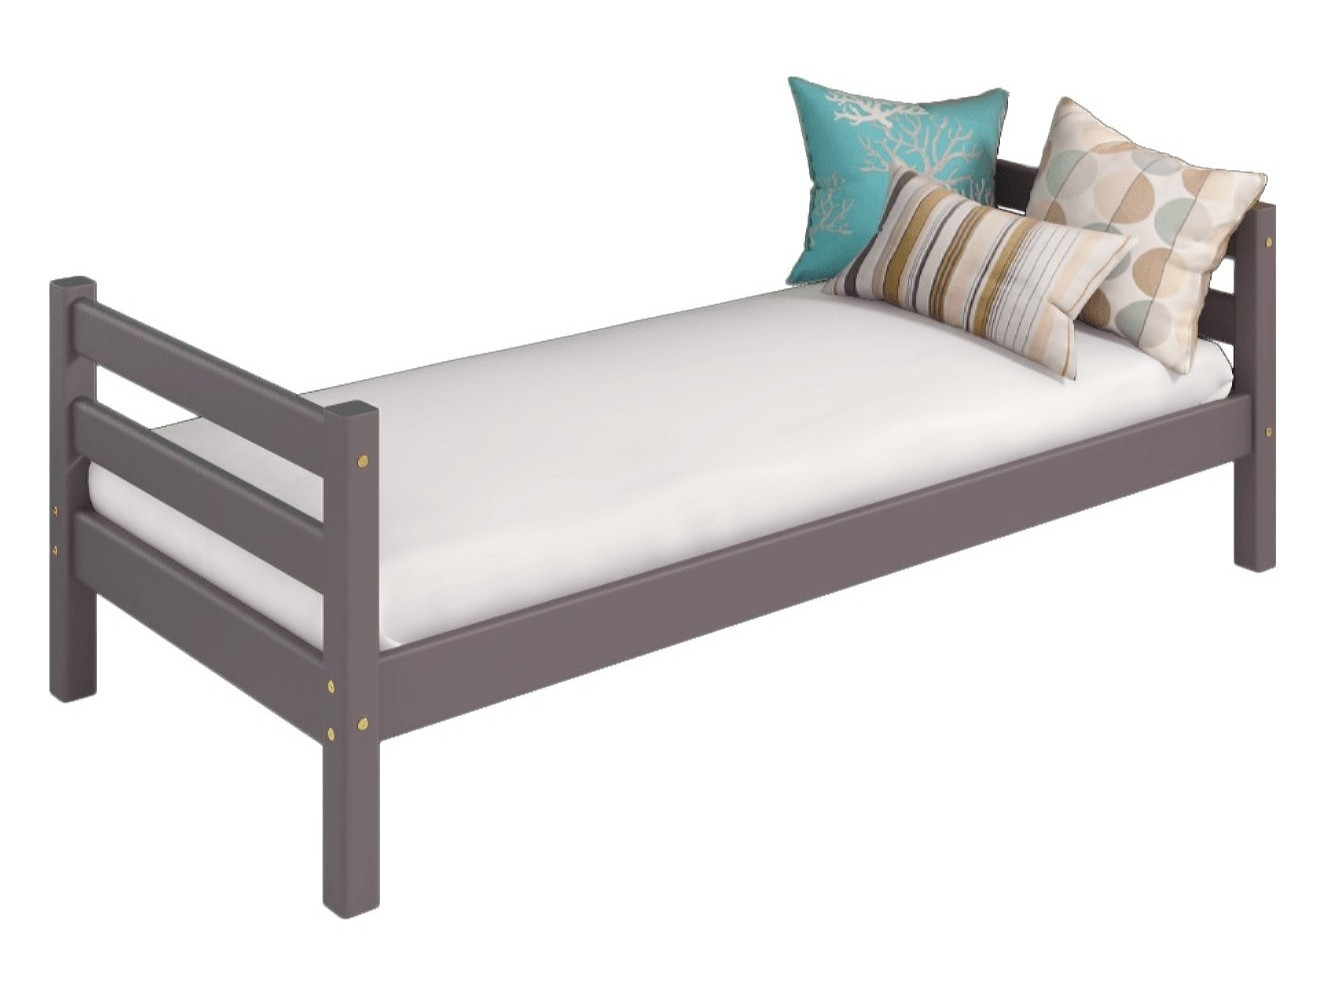 Кровать Соня (вариант 1), лаванда Массив кровать соня с надстройкой натуральный натуральный массив сосны